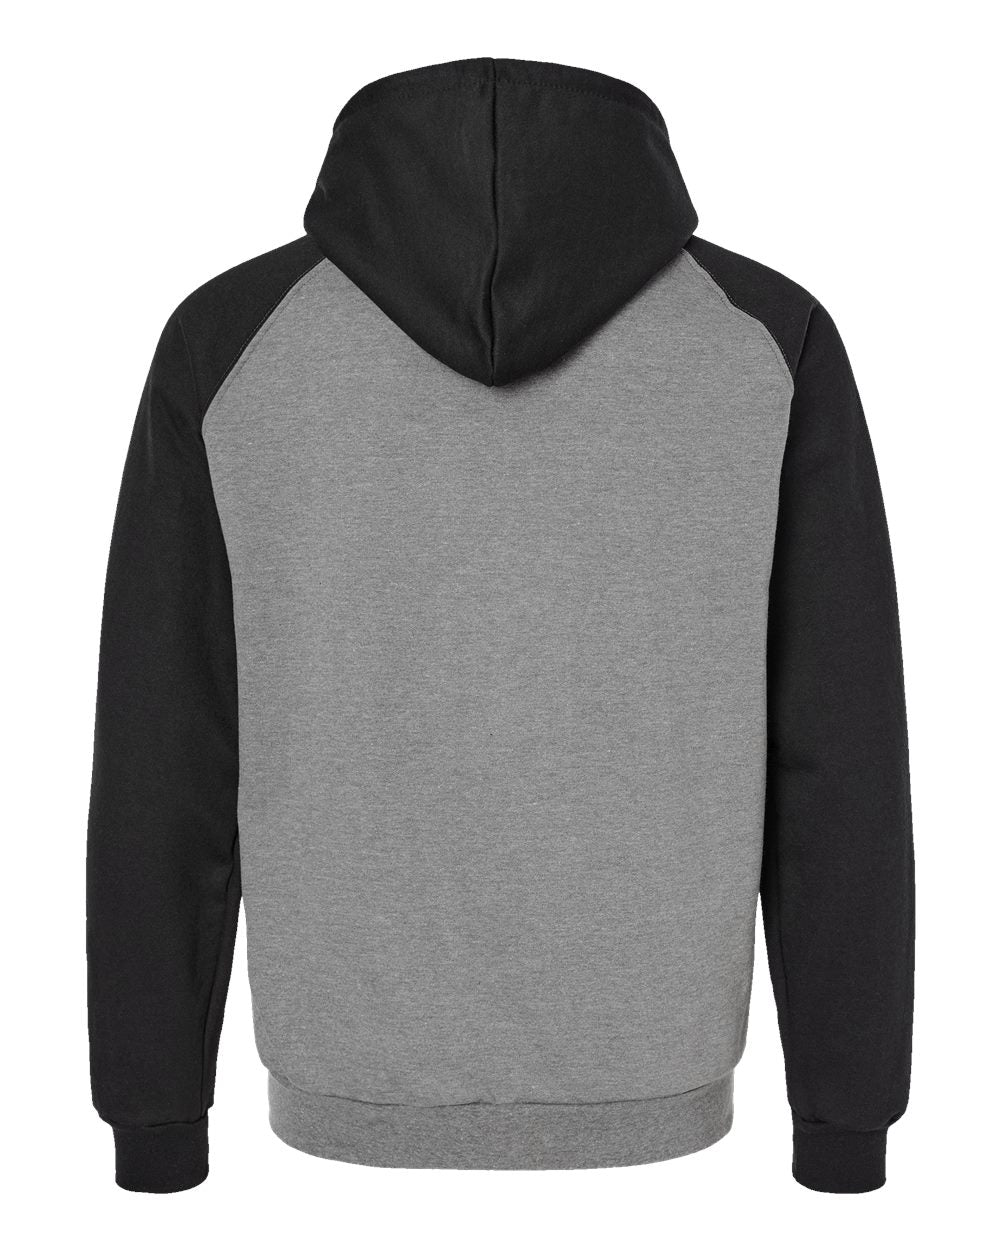 King Fashion Fleece Raglan Hooded Full-Zip Sweatshirt KF4048 #color_Grey Heather/ Black